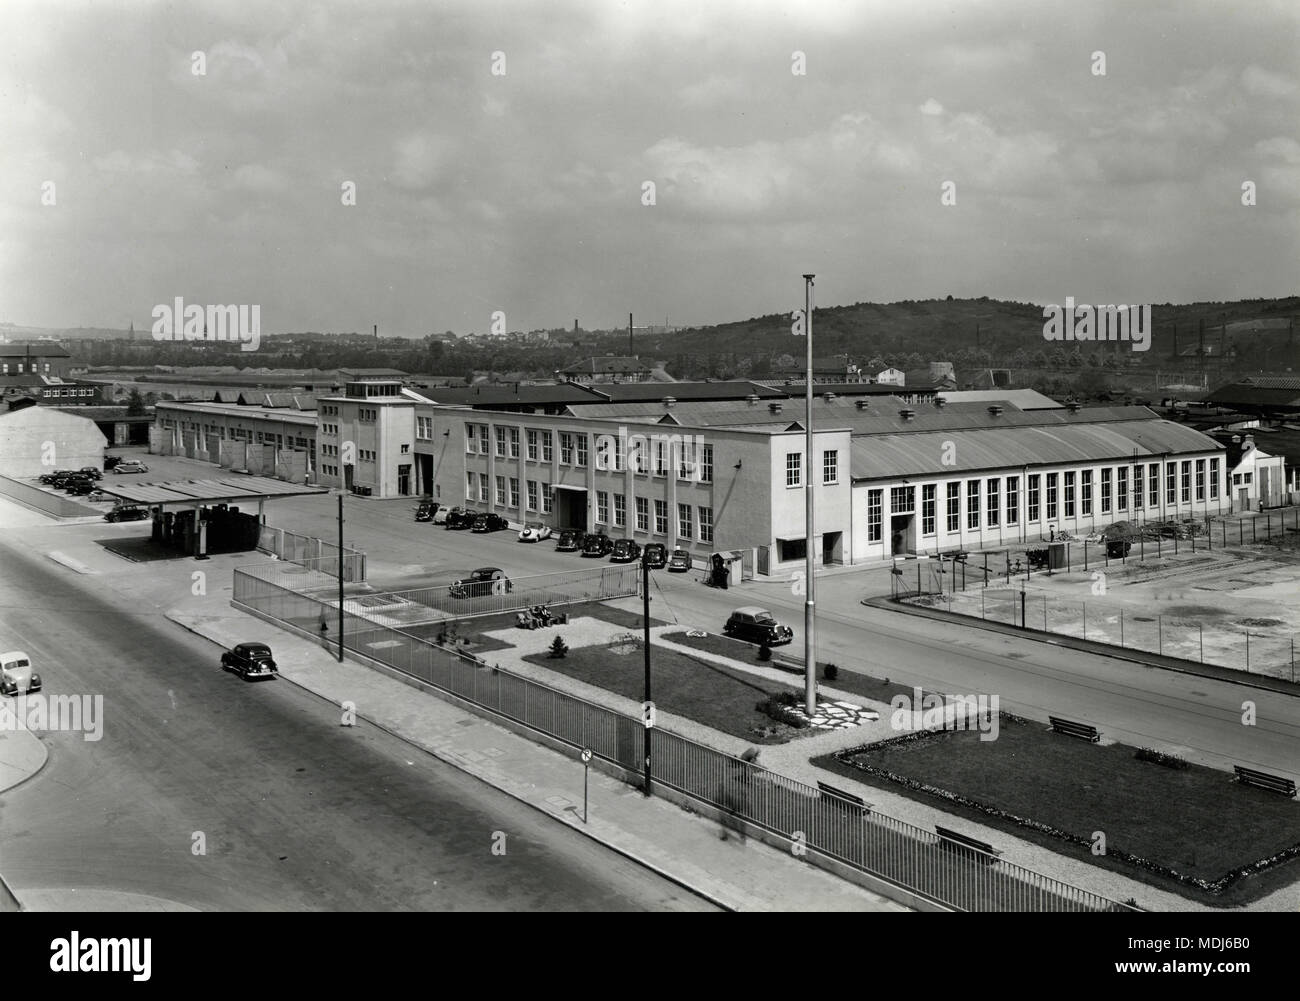 Daimler-Benz Mercedes factory, Unterturkheim, Germany 1950s Stock Photo